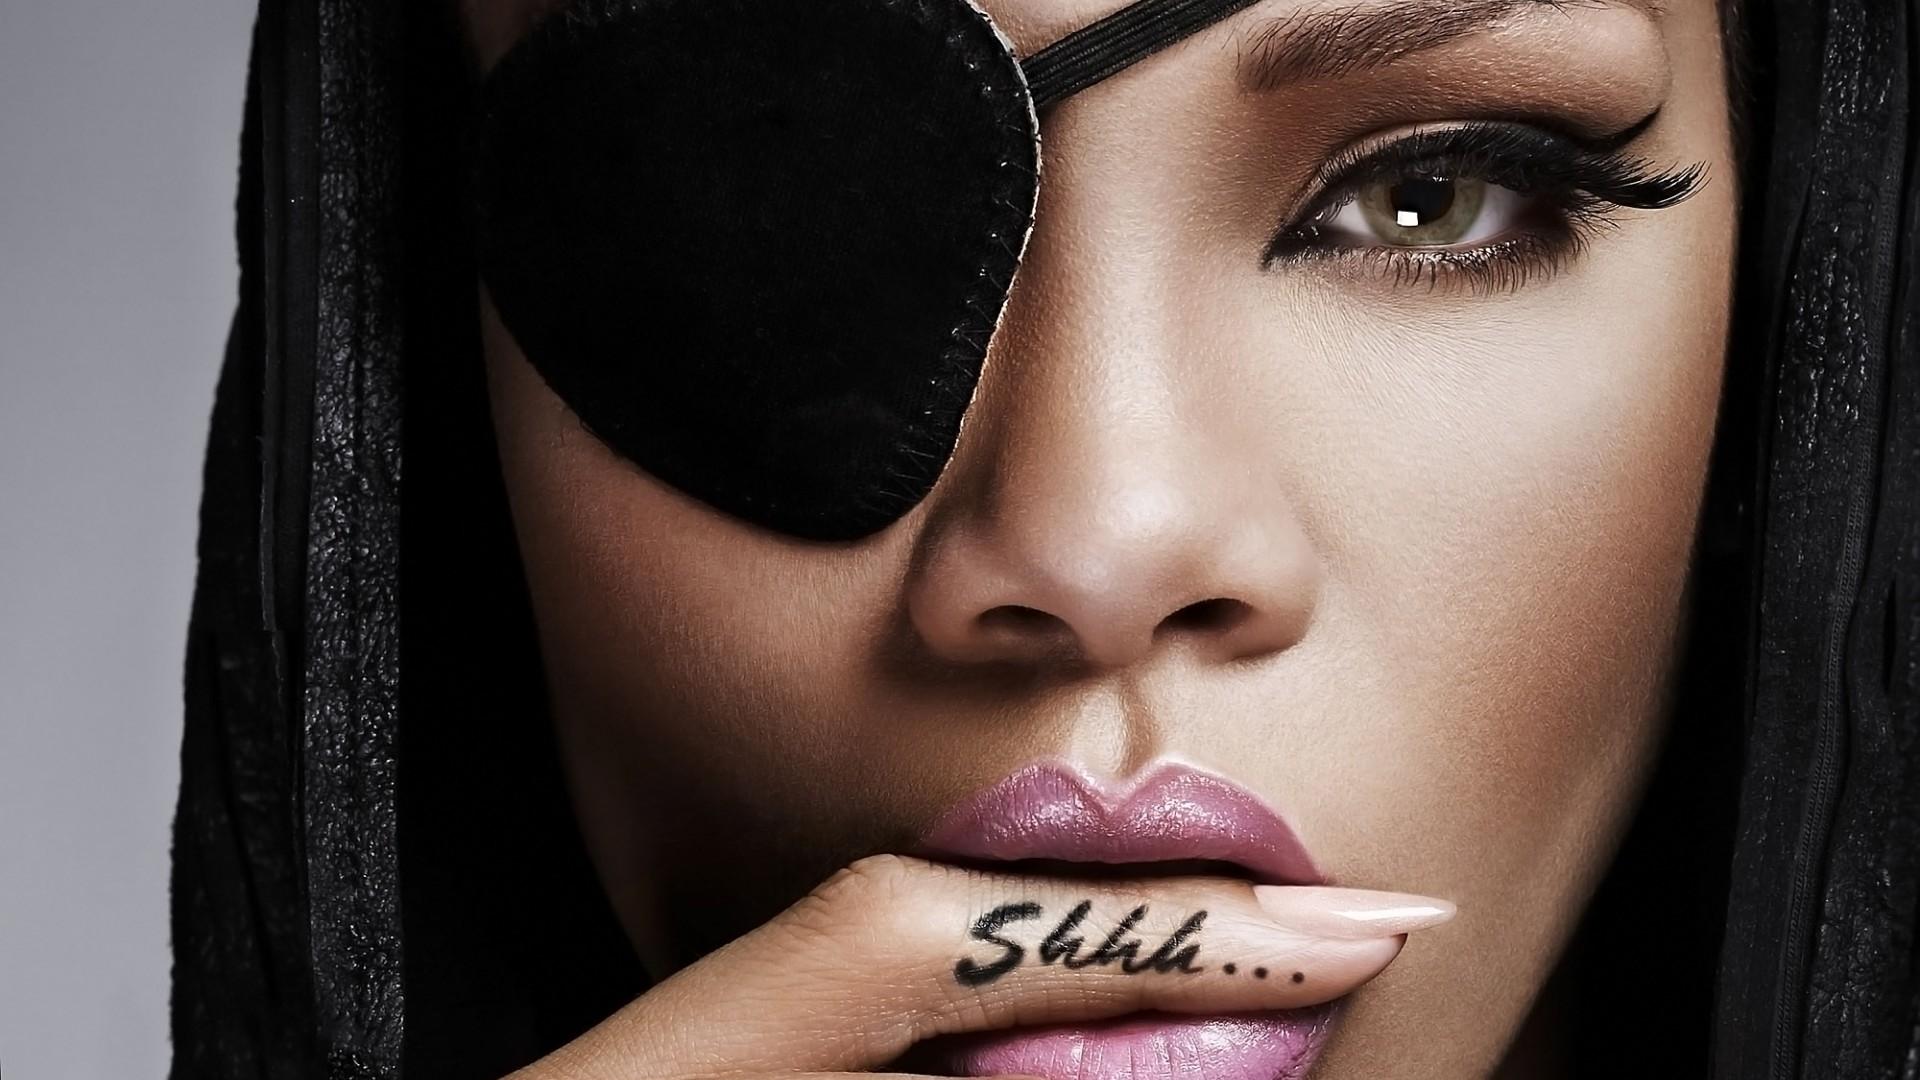 Rihanna Shhh Tattoo HD Wallpaper